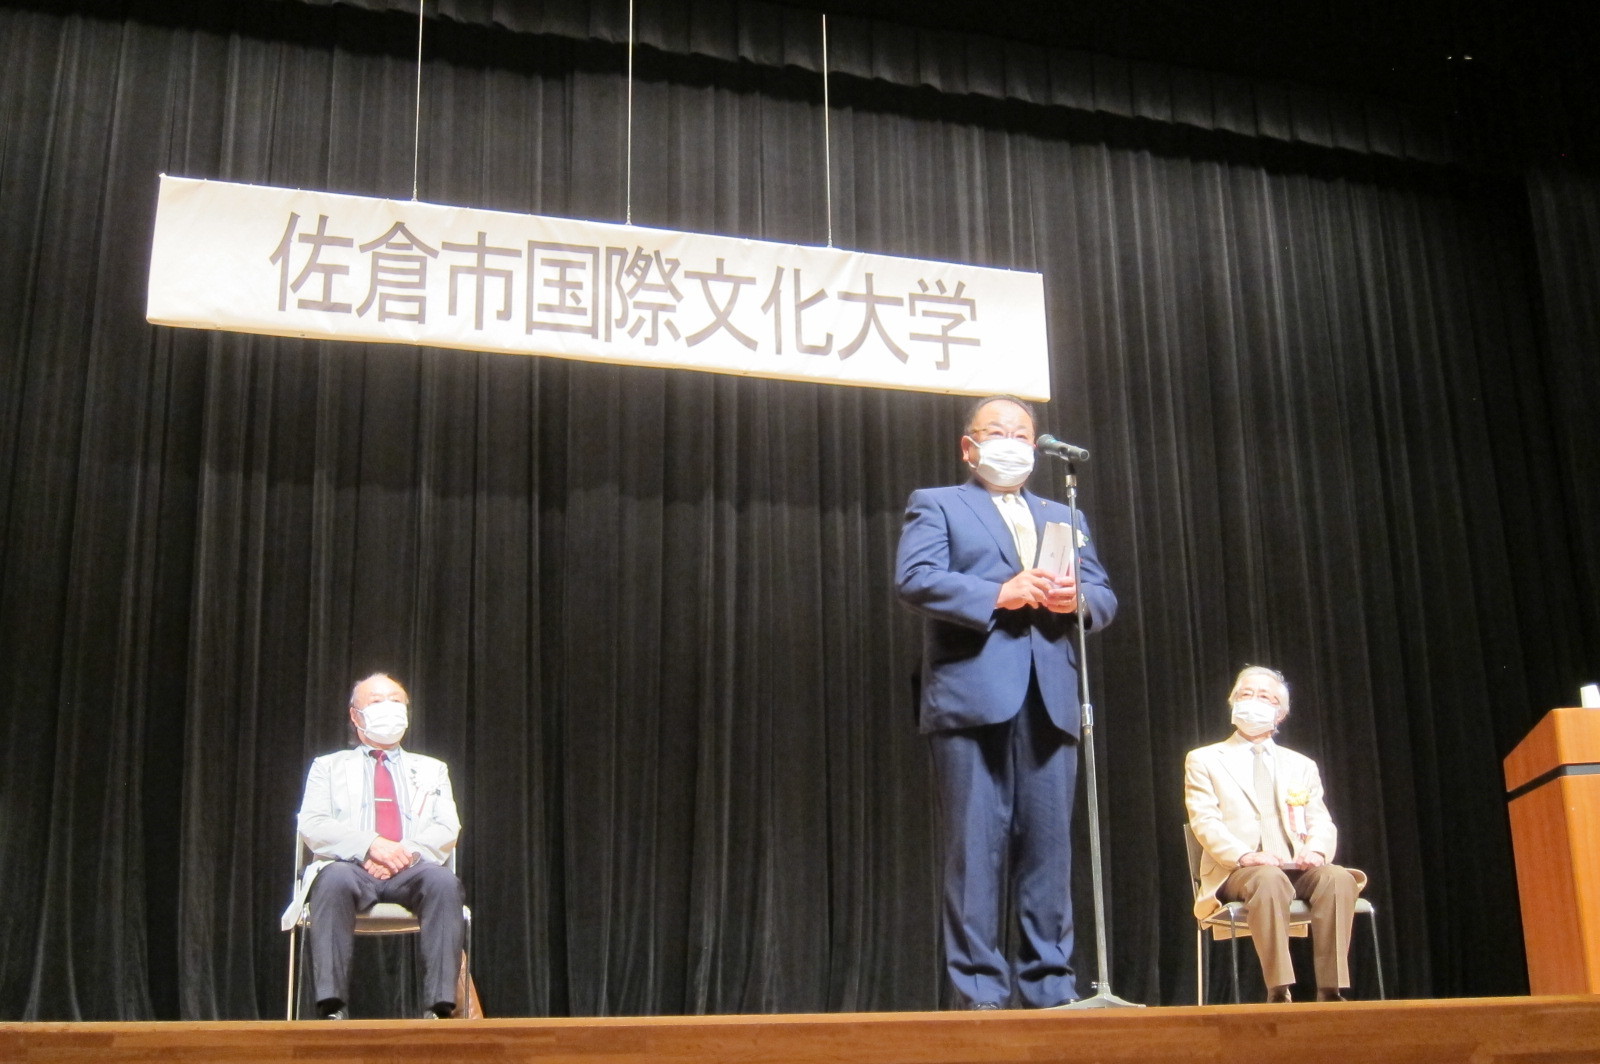 佐倉市国際文化大学 第2回公開講座にて、舞台上のマイクの前に立つ市長の写真